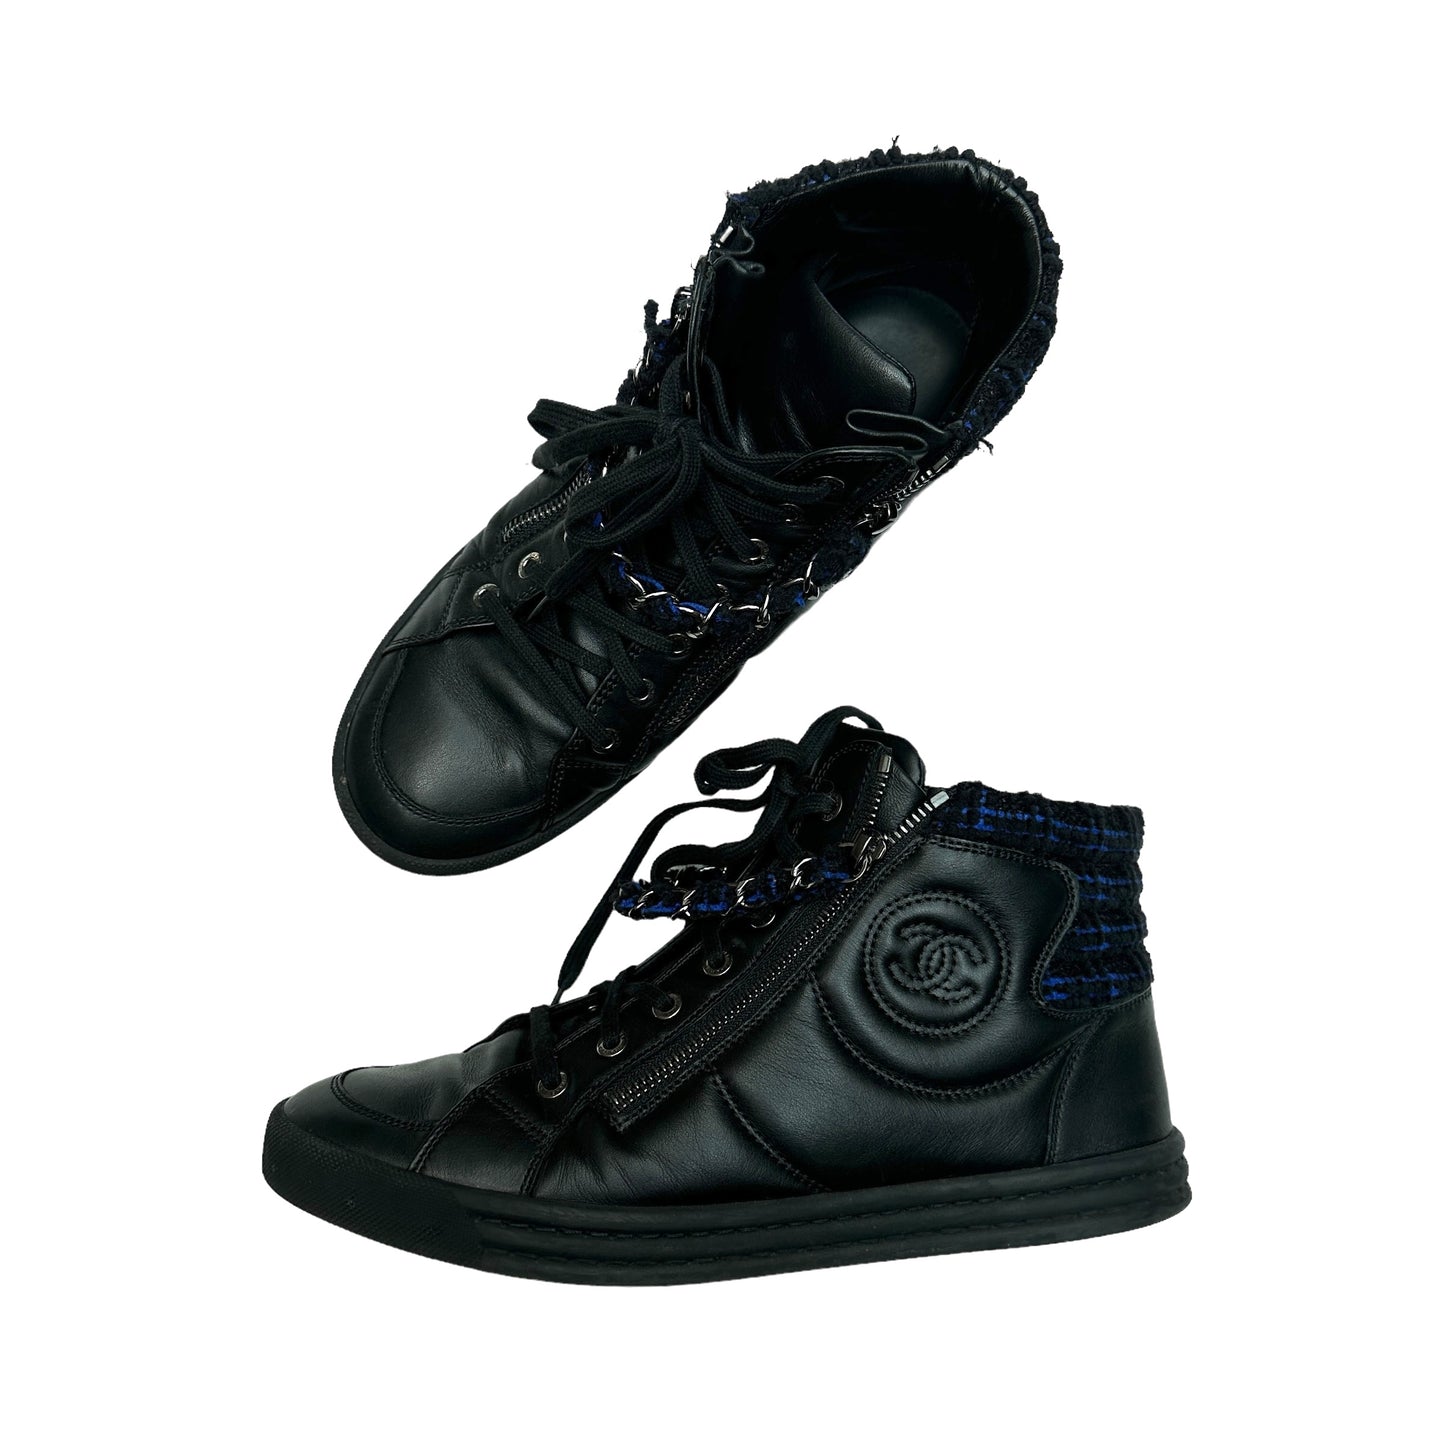 Black Leather & Tweed High Top Sneakers - 10